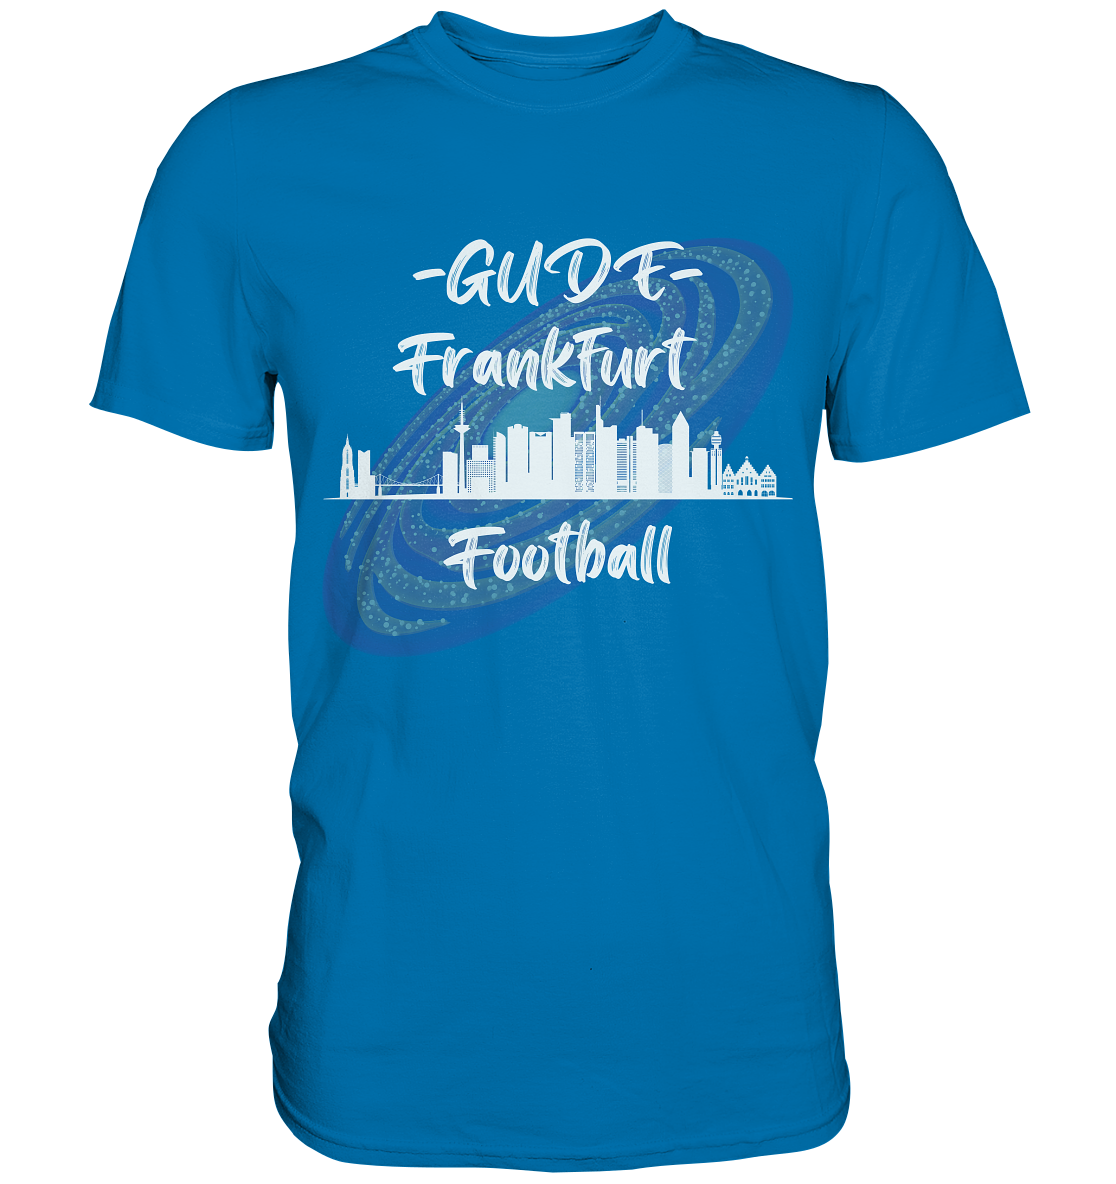 Gude - Frankfurt Football (weiße Schrift) - Premium Shirt - Football Unity Football Unity